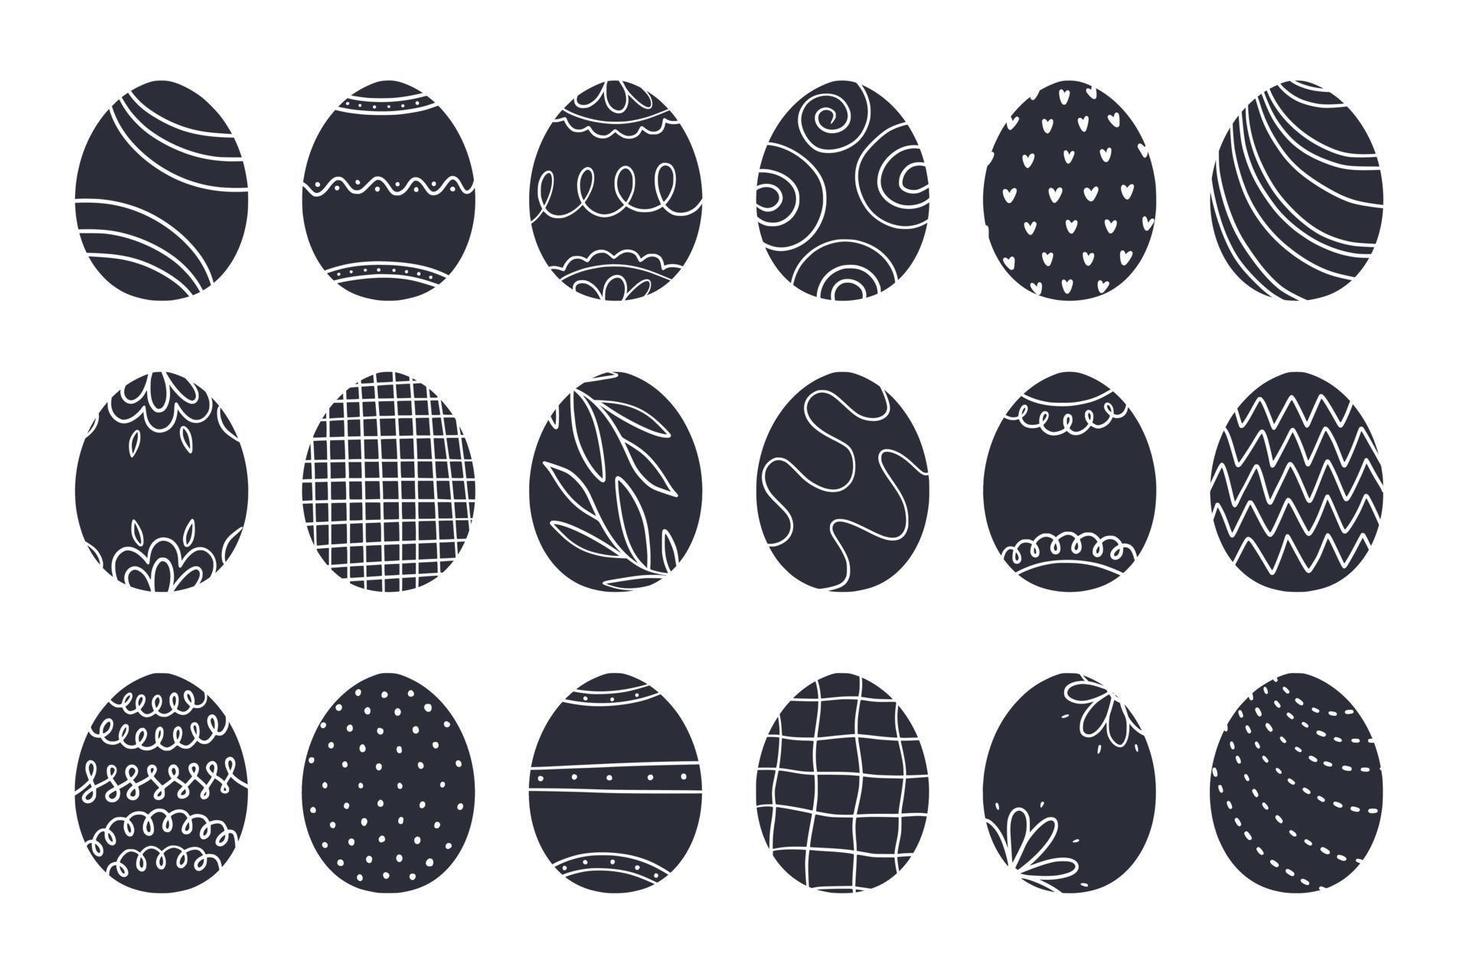 Pâques Oeuf collection décoré avec scandinave style motifs, ornements et textures. noir et blanc minimaliste peint des œufs vecteur